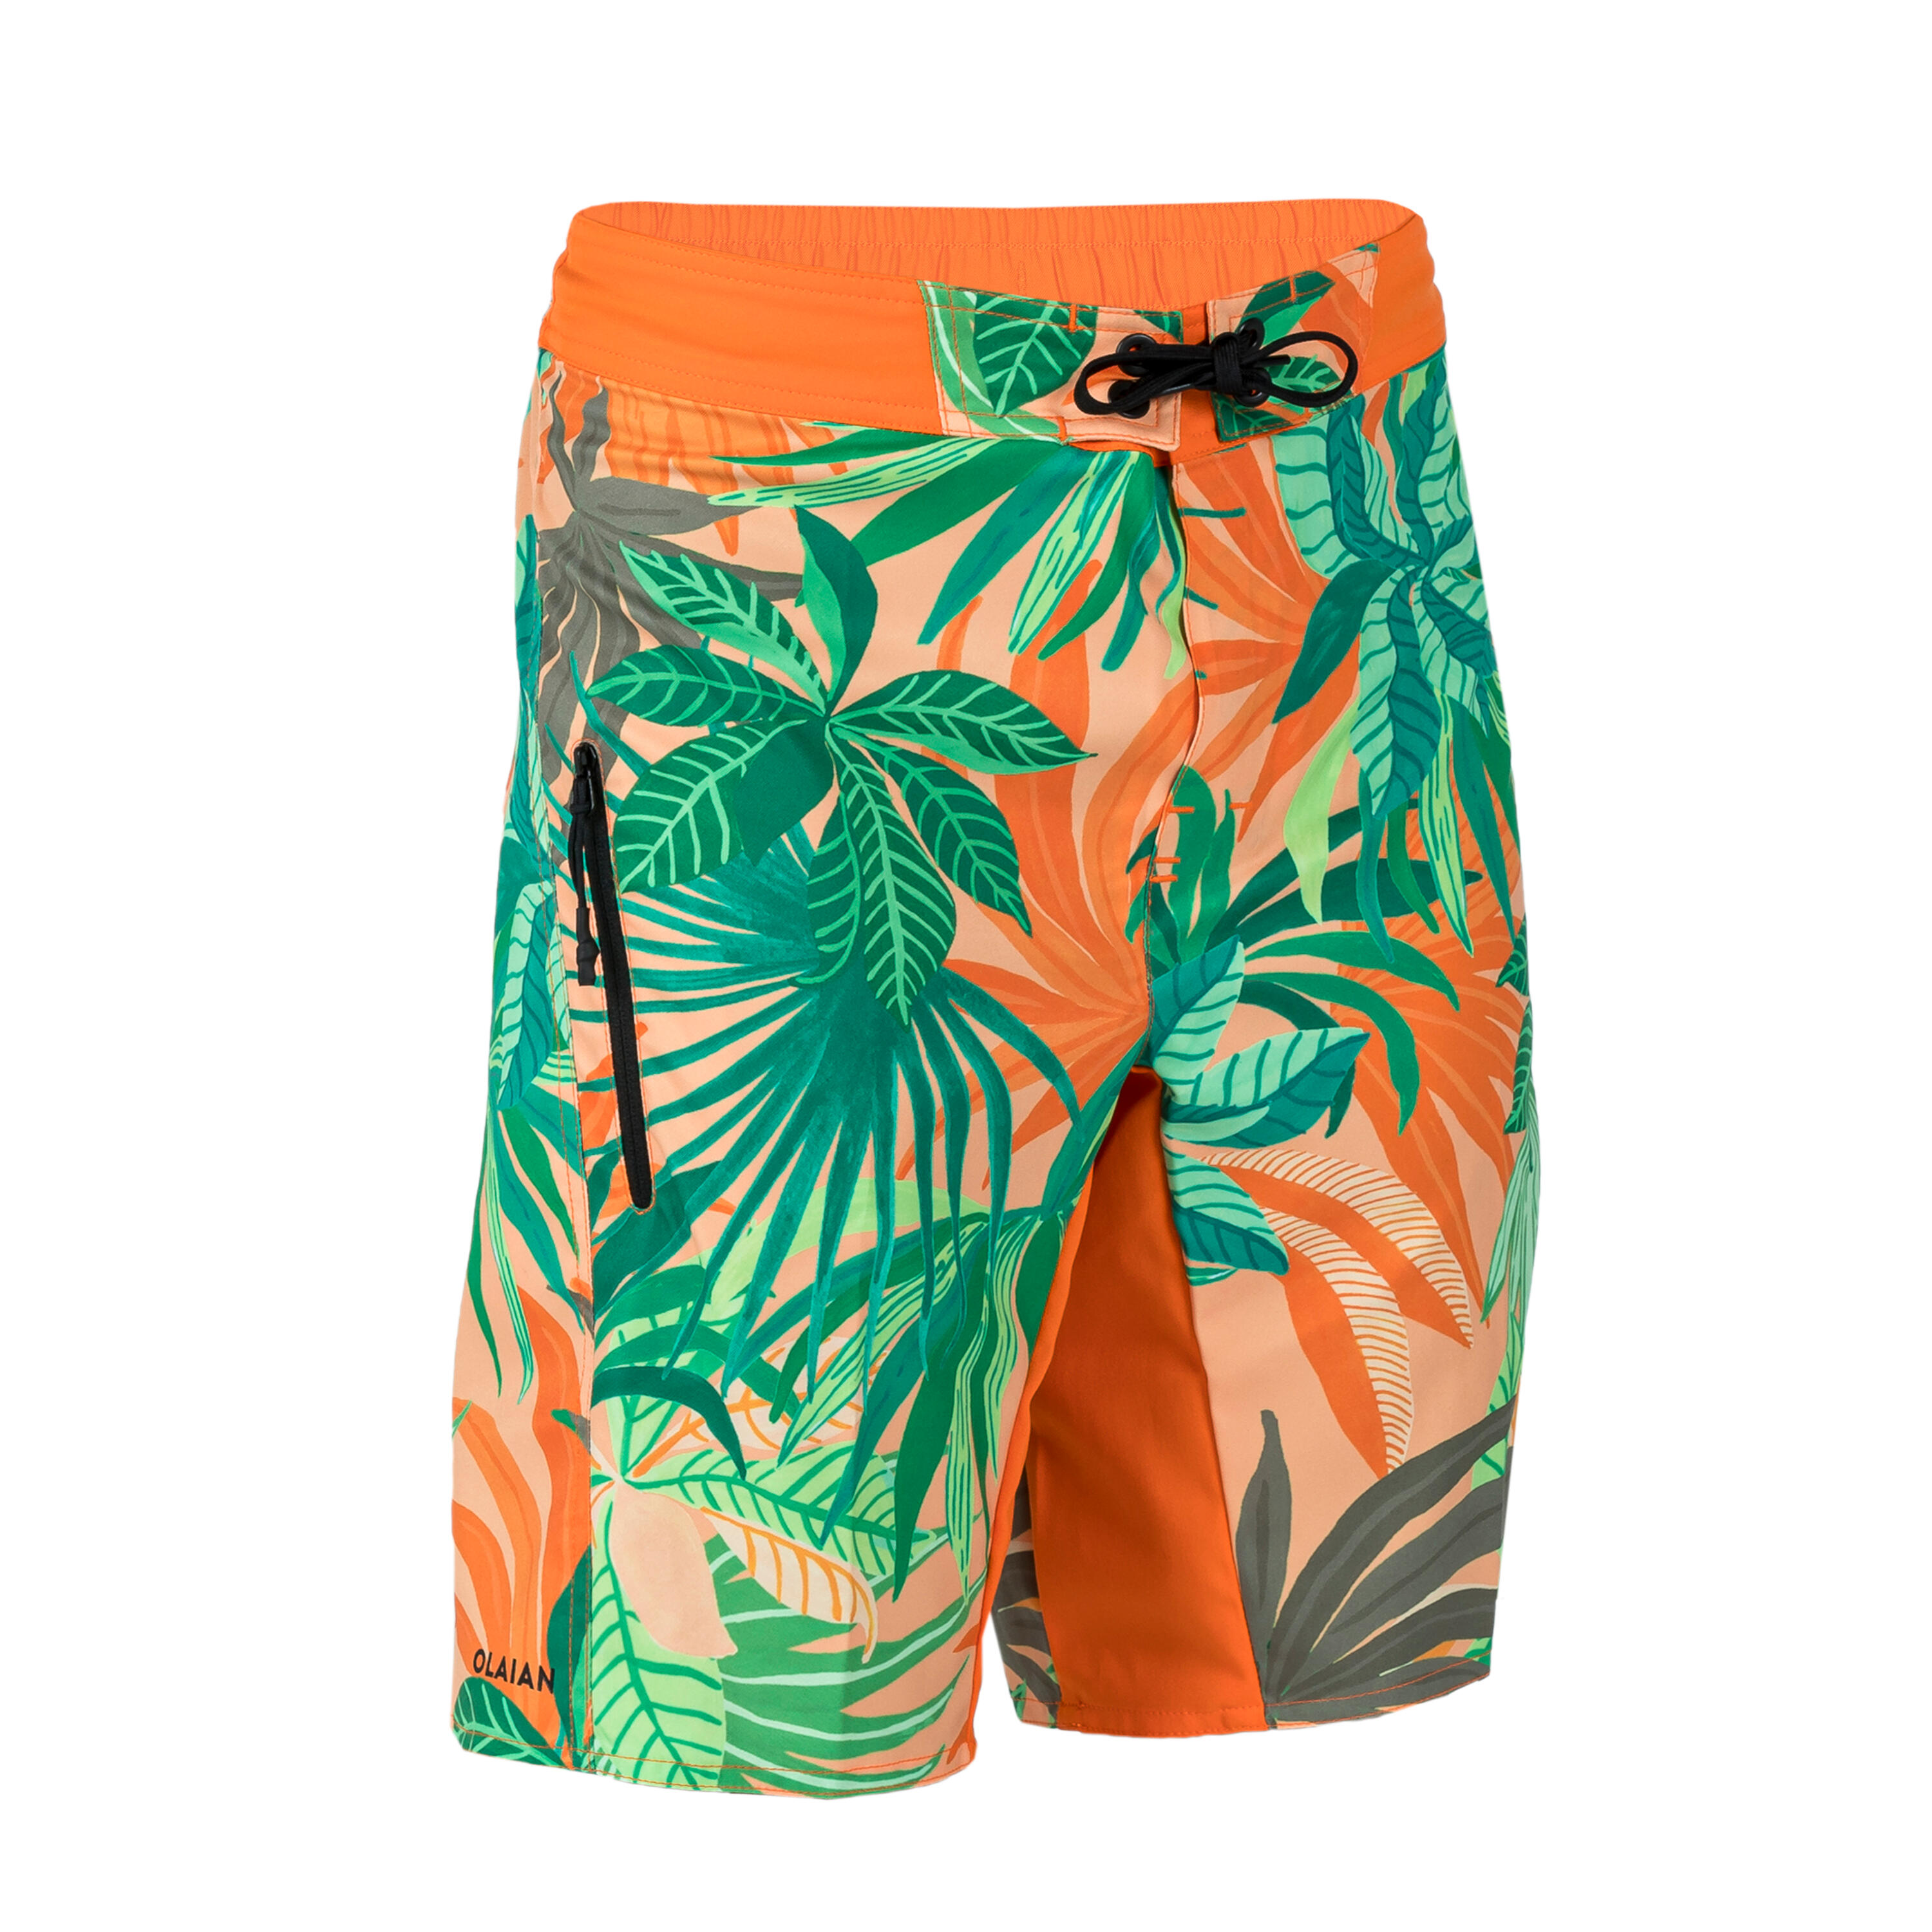 OLAIAN Boy's swim shorts - 550 Canopy orange